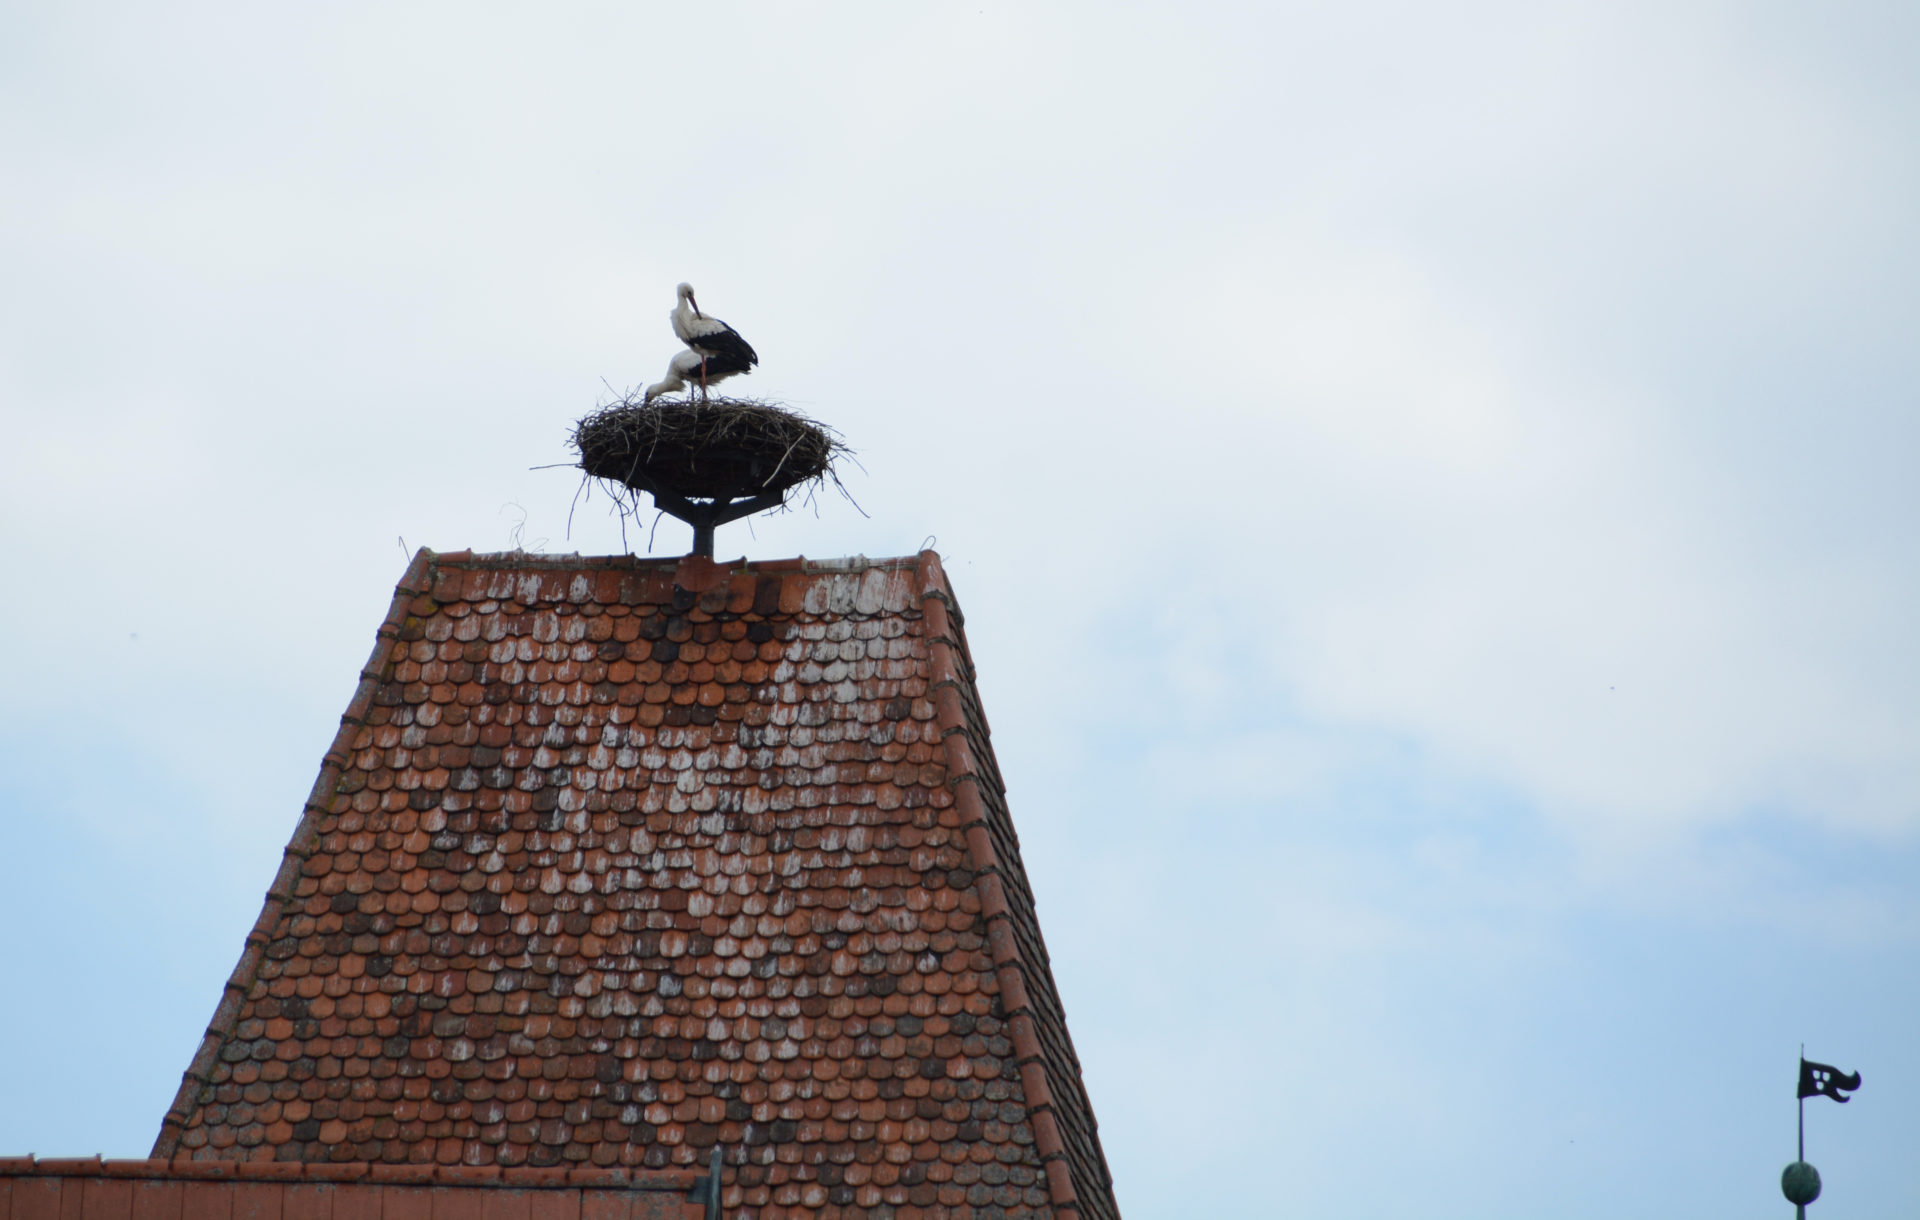 Störche in ihrem Nest auf einem Dach in Rothenburg ob der Tauber